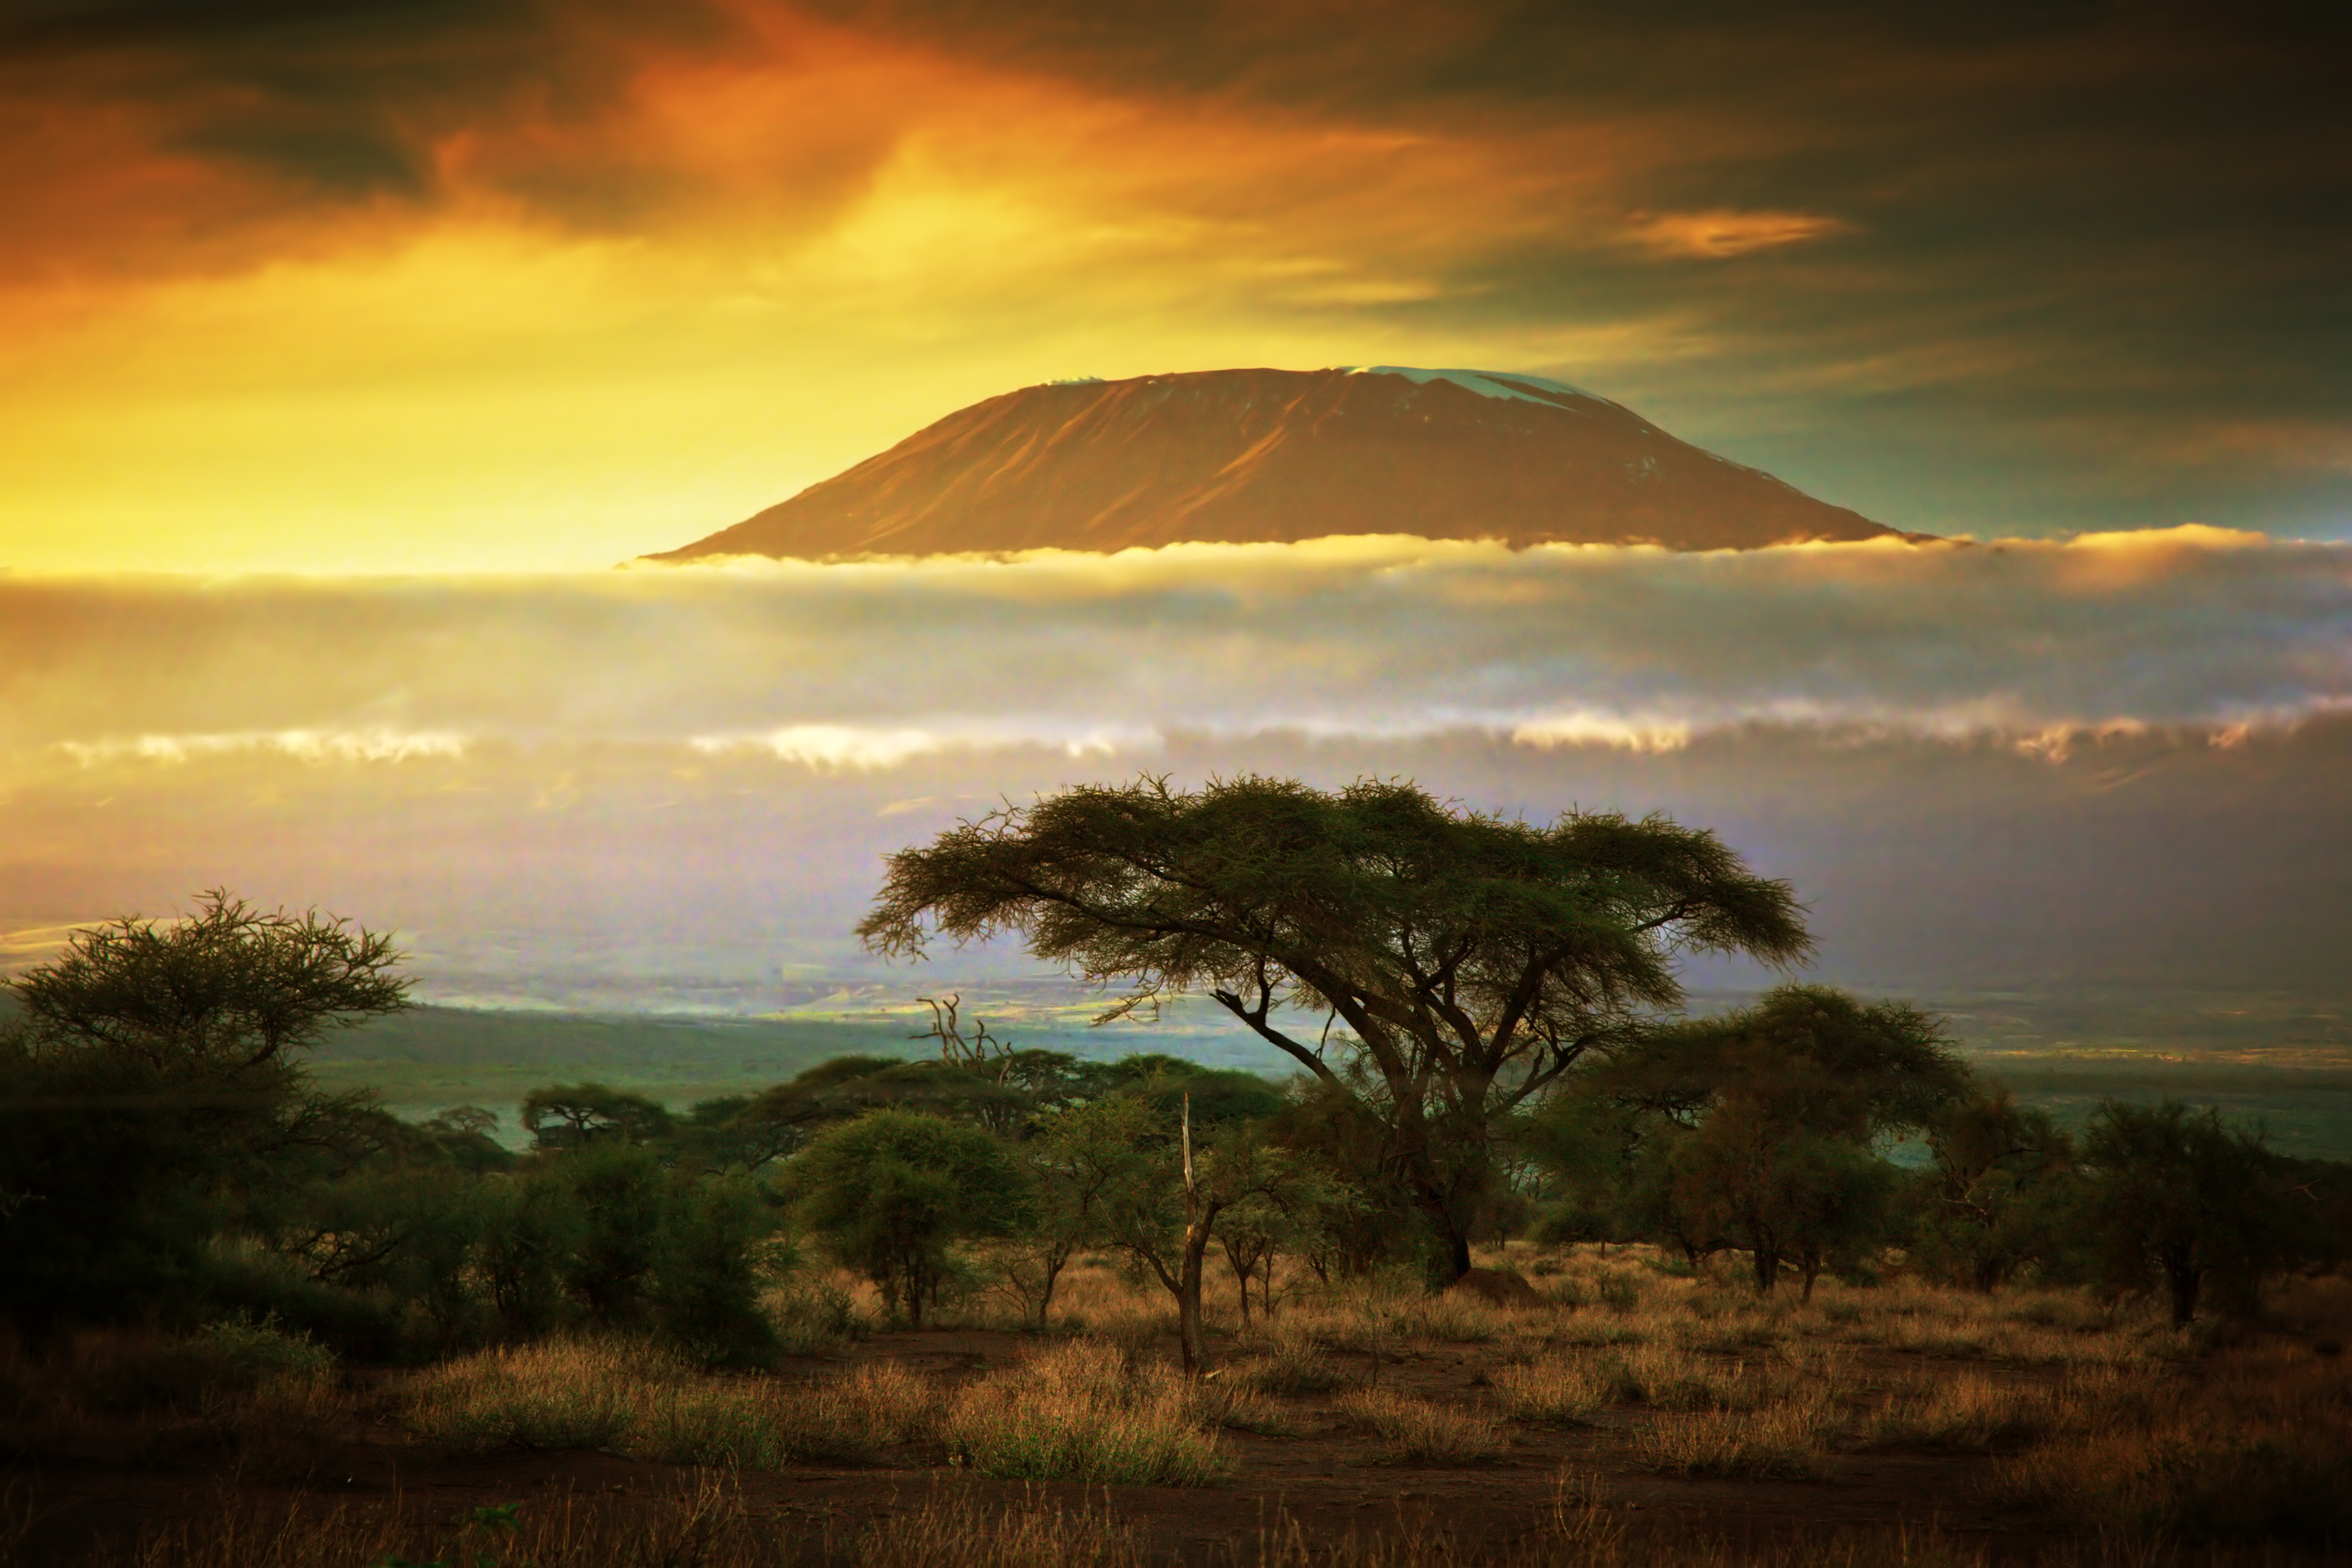 Destination image of Kenya